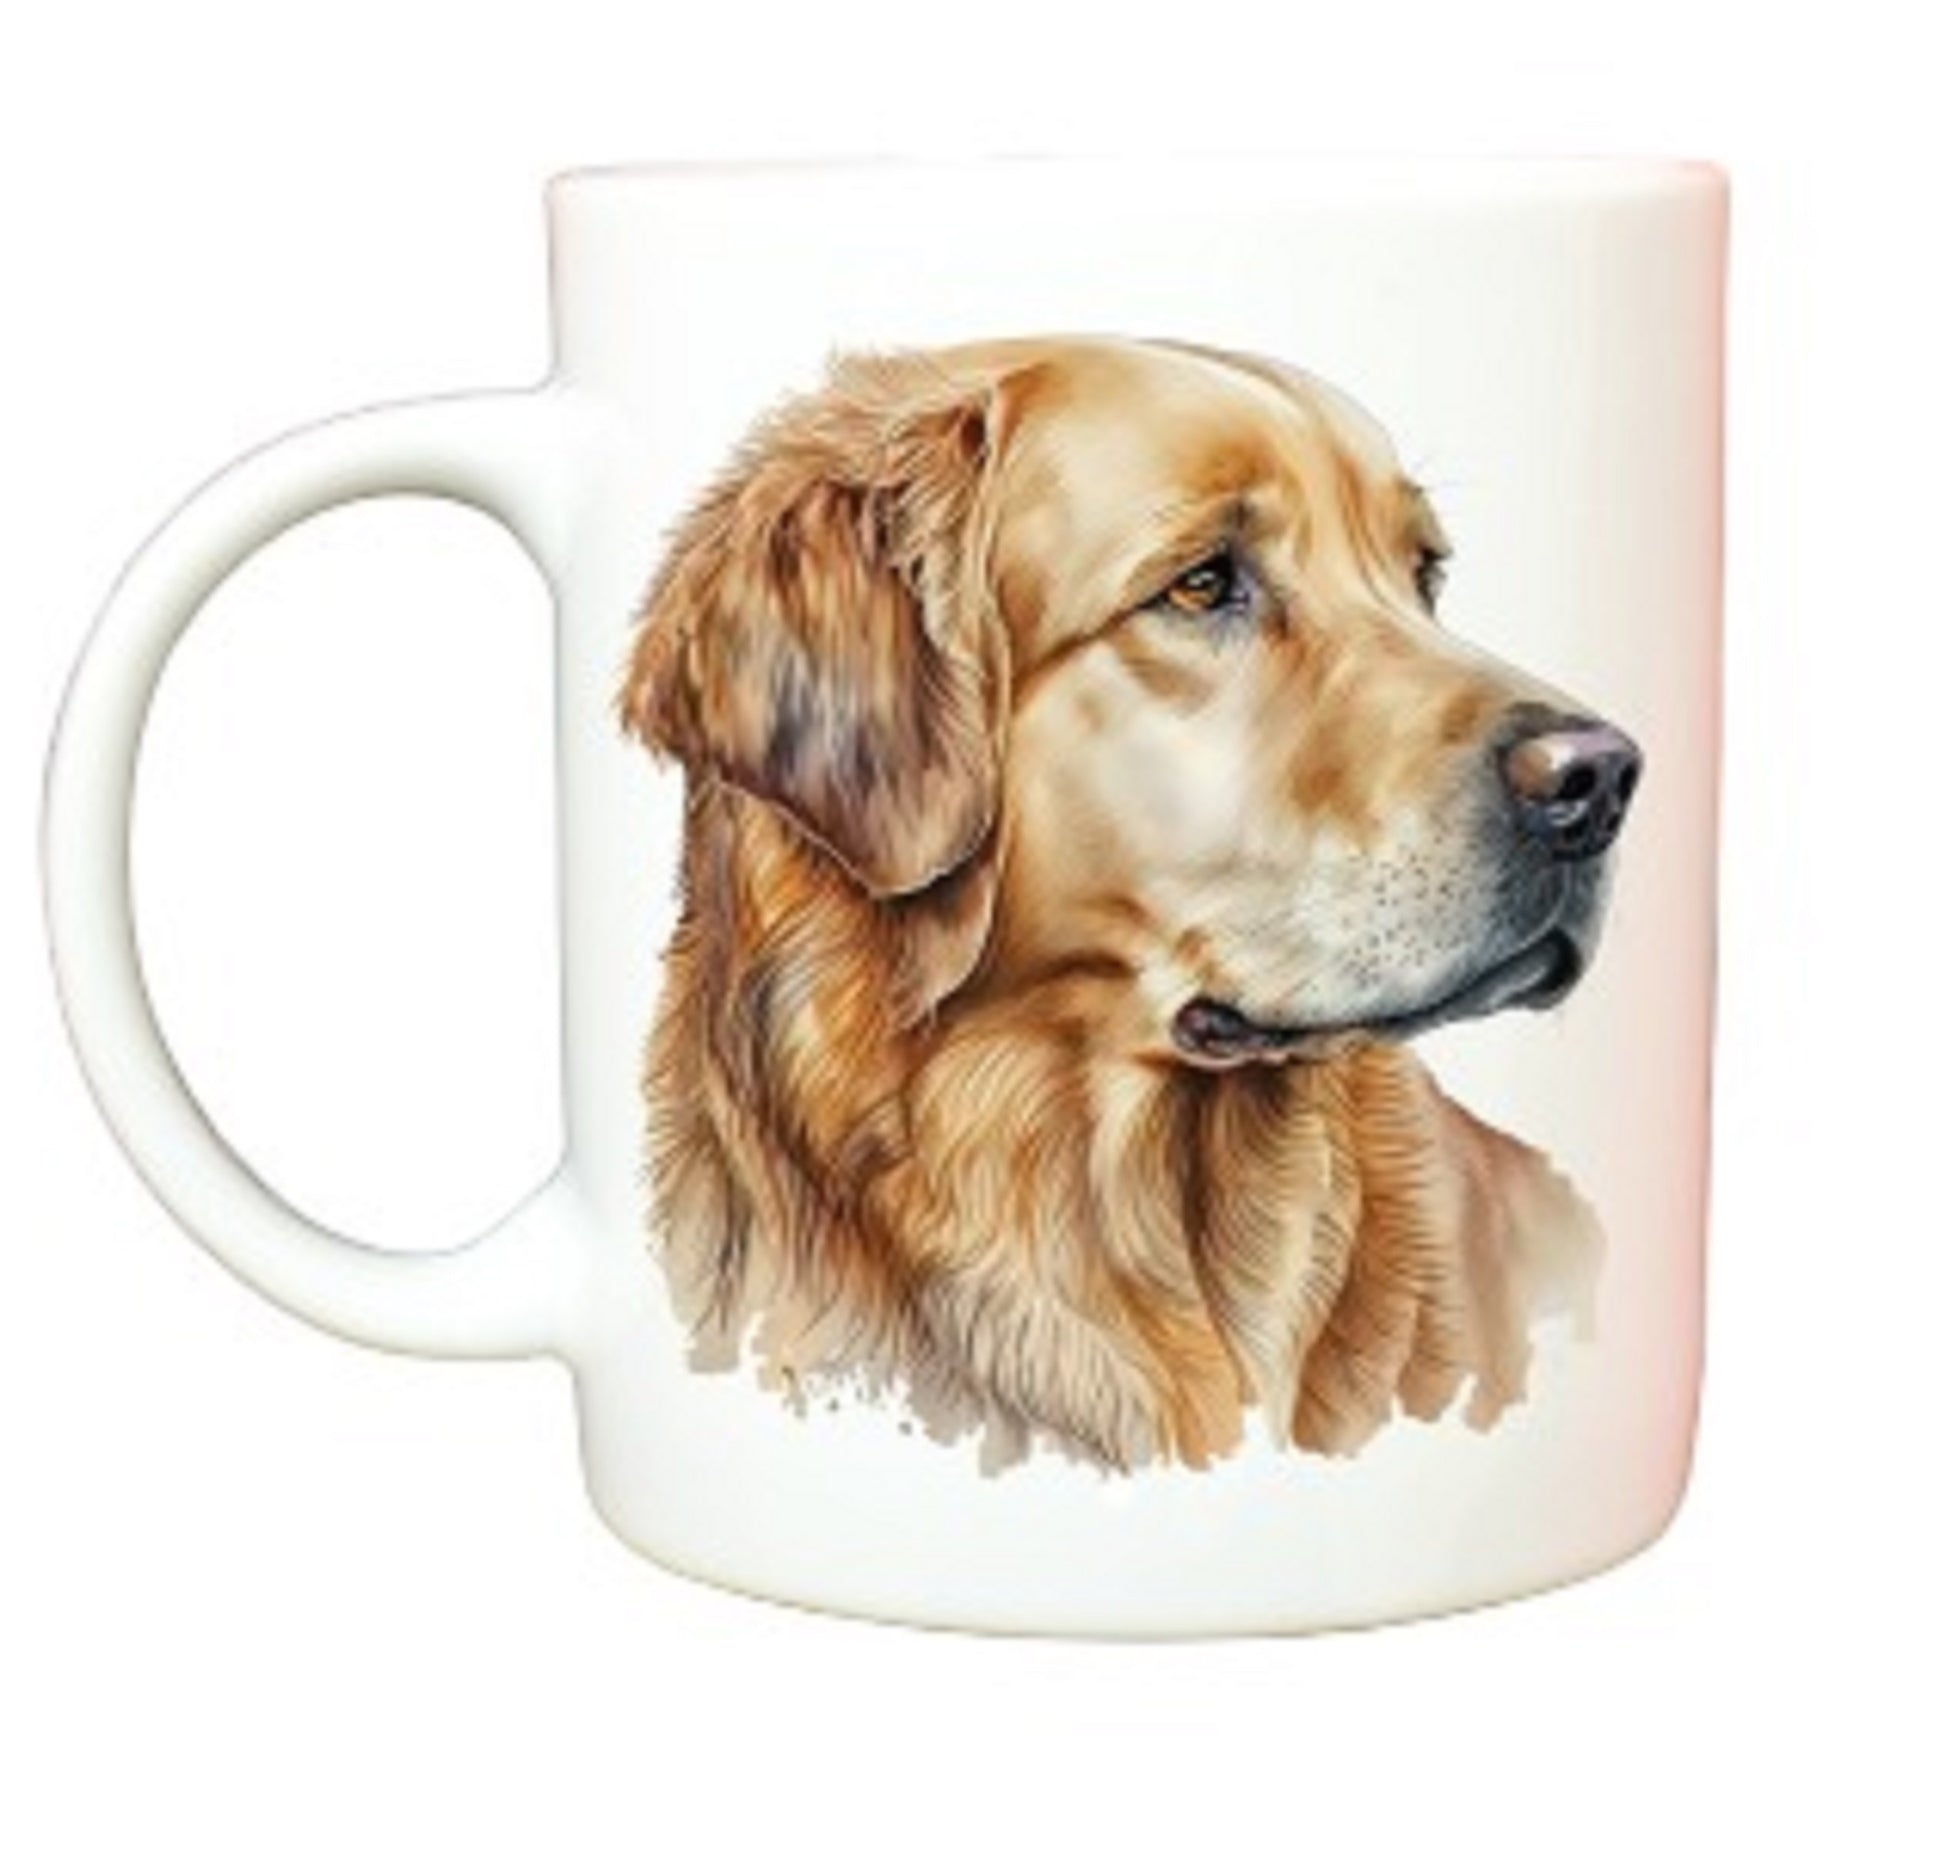  Golden Retriever Dog Mug by Free Spirit Accessories sold by Free Spirit Accessories